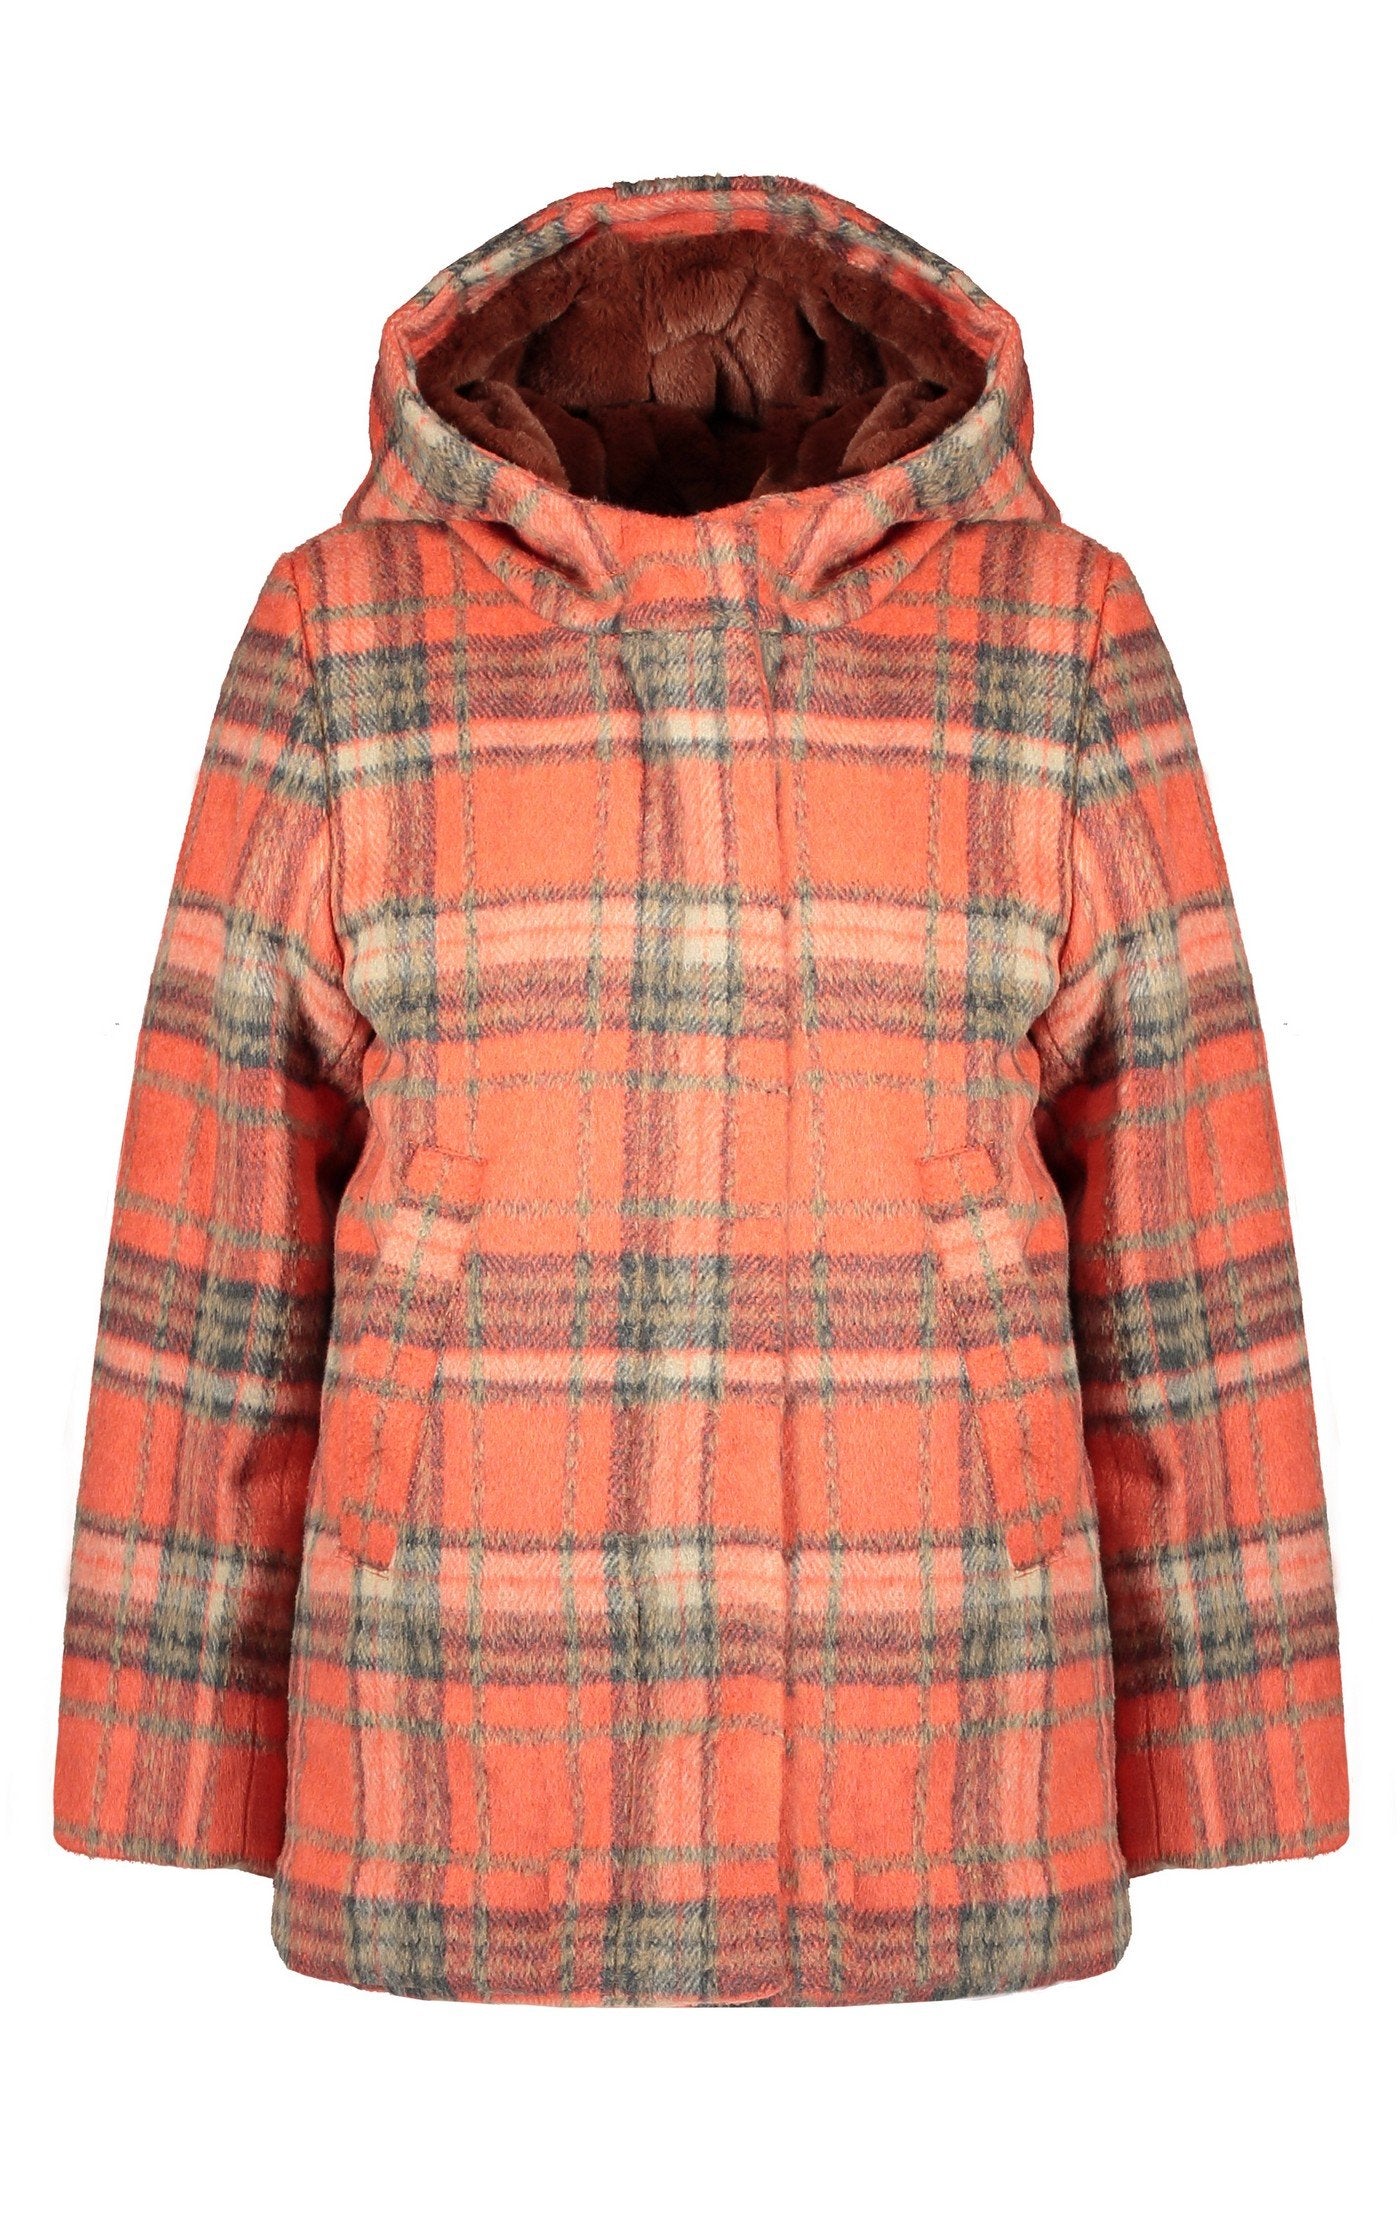 Meisjes Badras classic wooly hooded jacket van NoNo in de kleur Crayfish in maat 134-140.